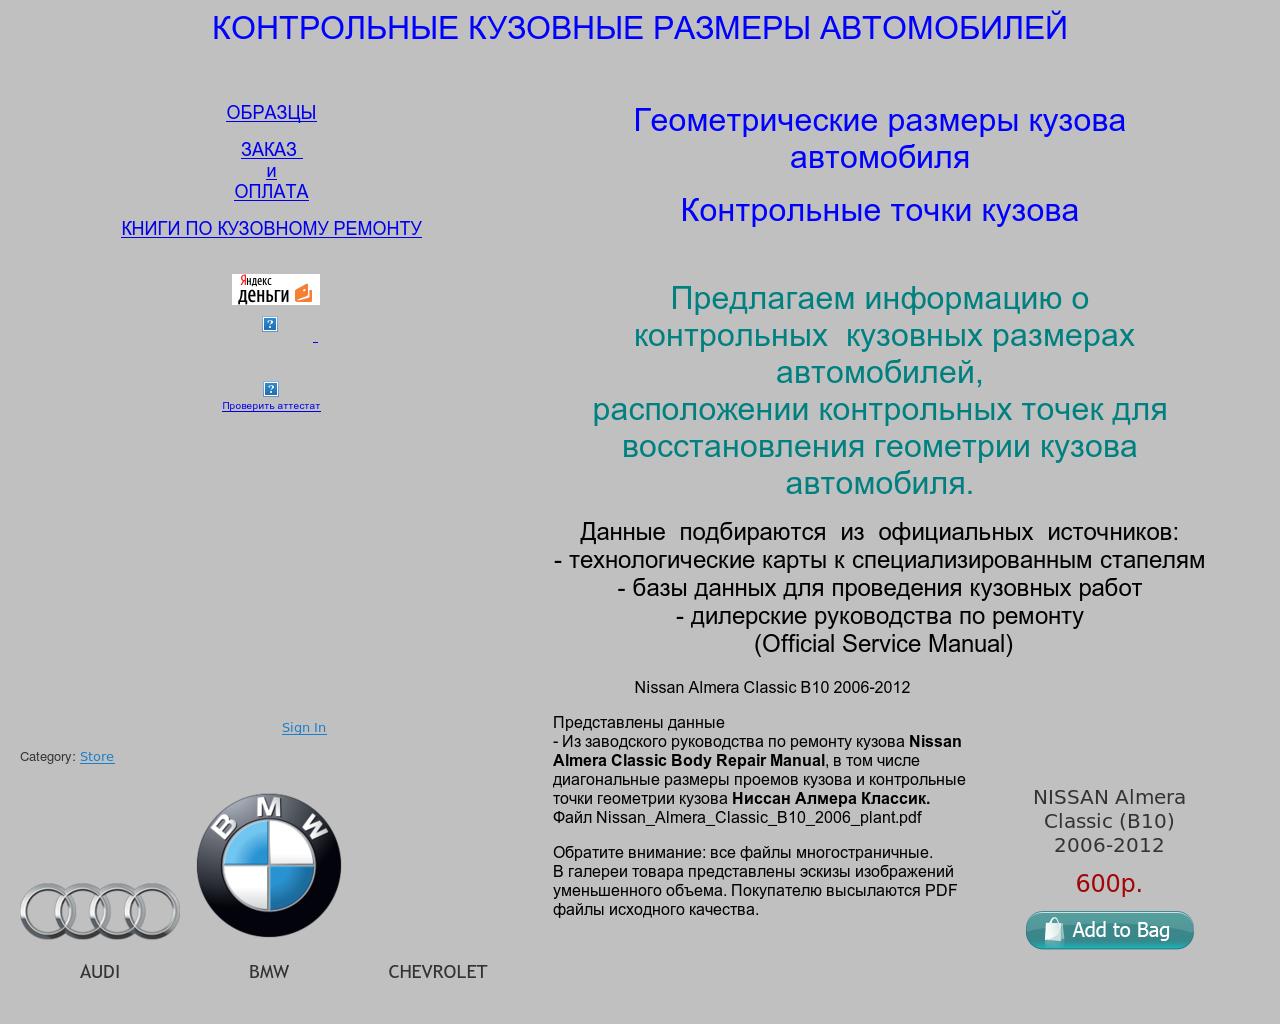 Изображение сайта вадимпетров.рф в разрешении 1280x1024